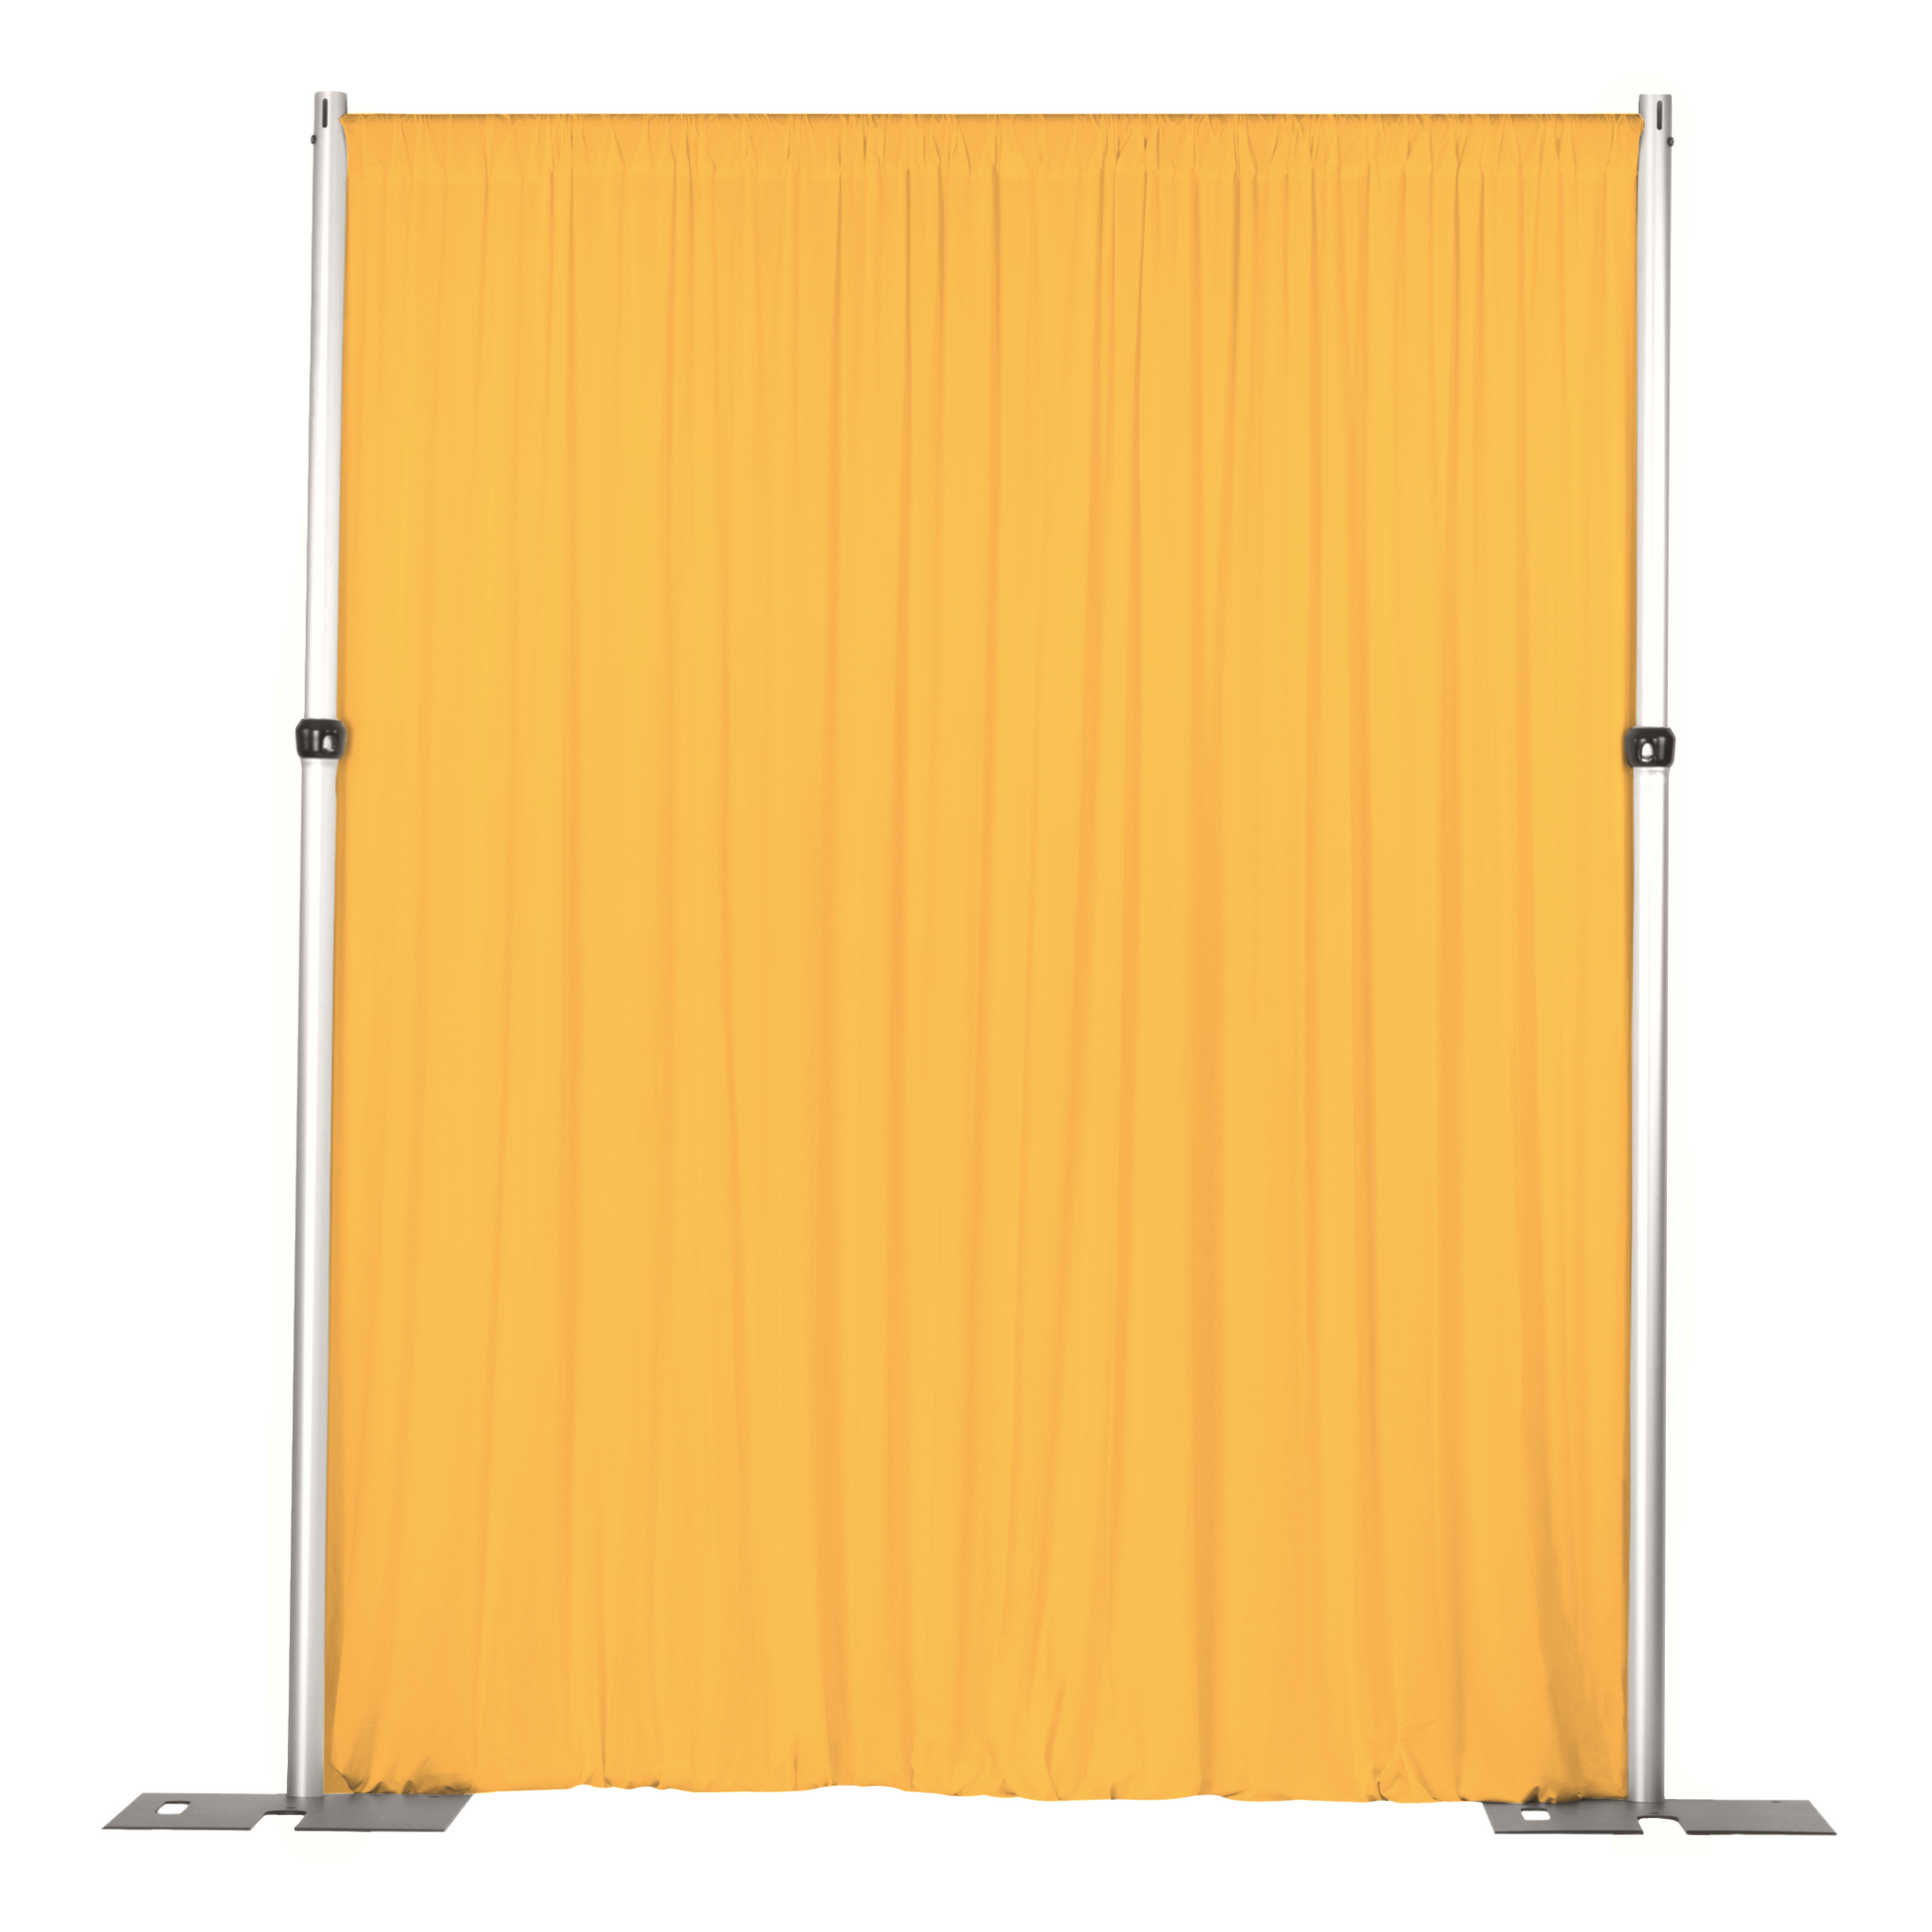 Spandex 4-way Stretch Drape Curtain 12ft H x 60" W - Canary Yellow